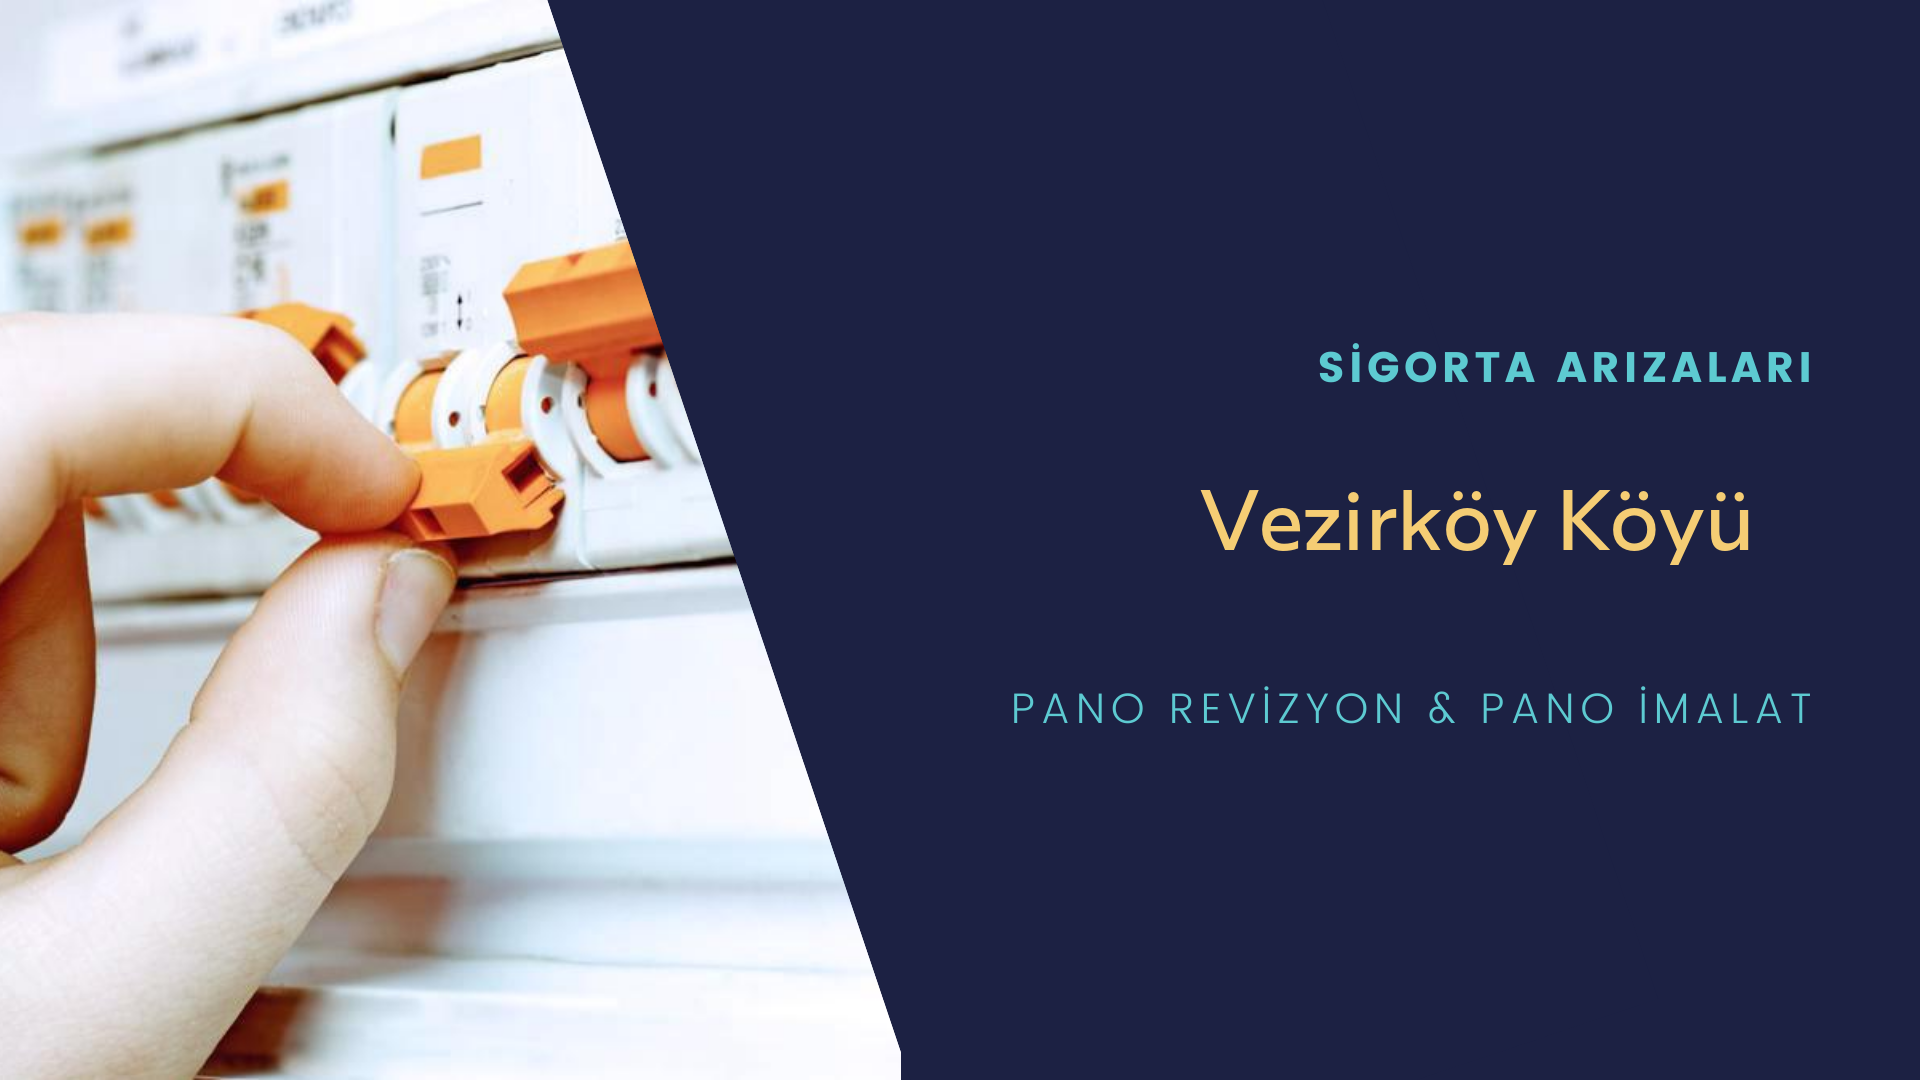 Vezirköy Köyü Sigorta Arızaları İçin Profesyonel Elektrikçi ustalarımızı dilediğiniz zaman arayabilir talepte bulunabilirsiniz.